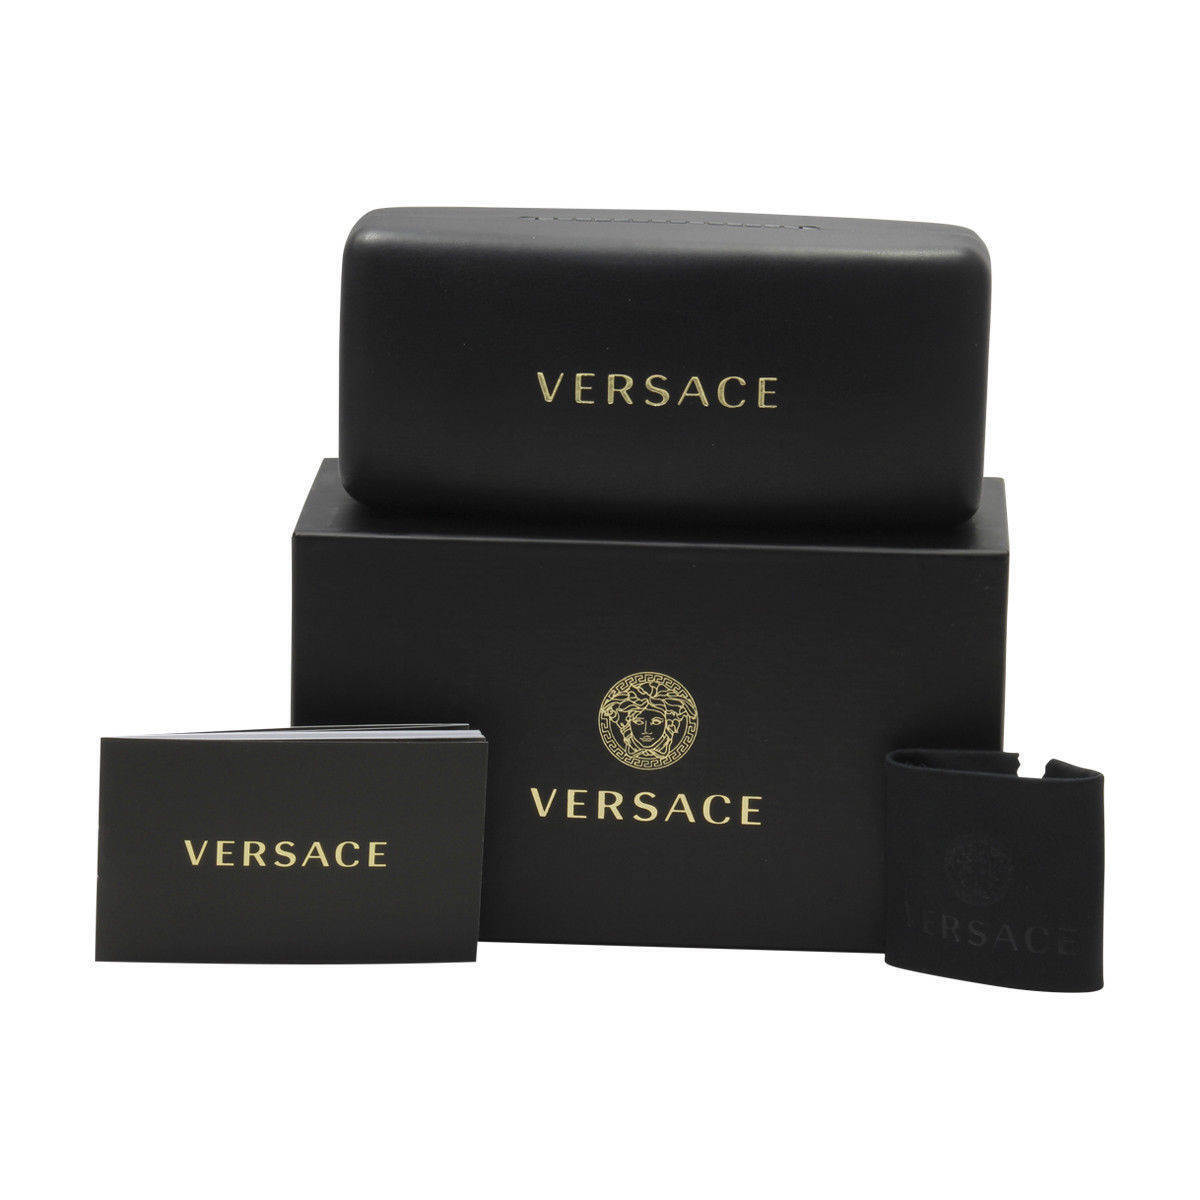 Versace VE3335-GB1-56  New Eyeglasses